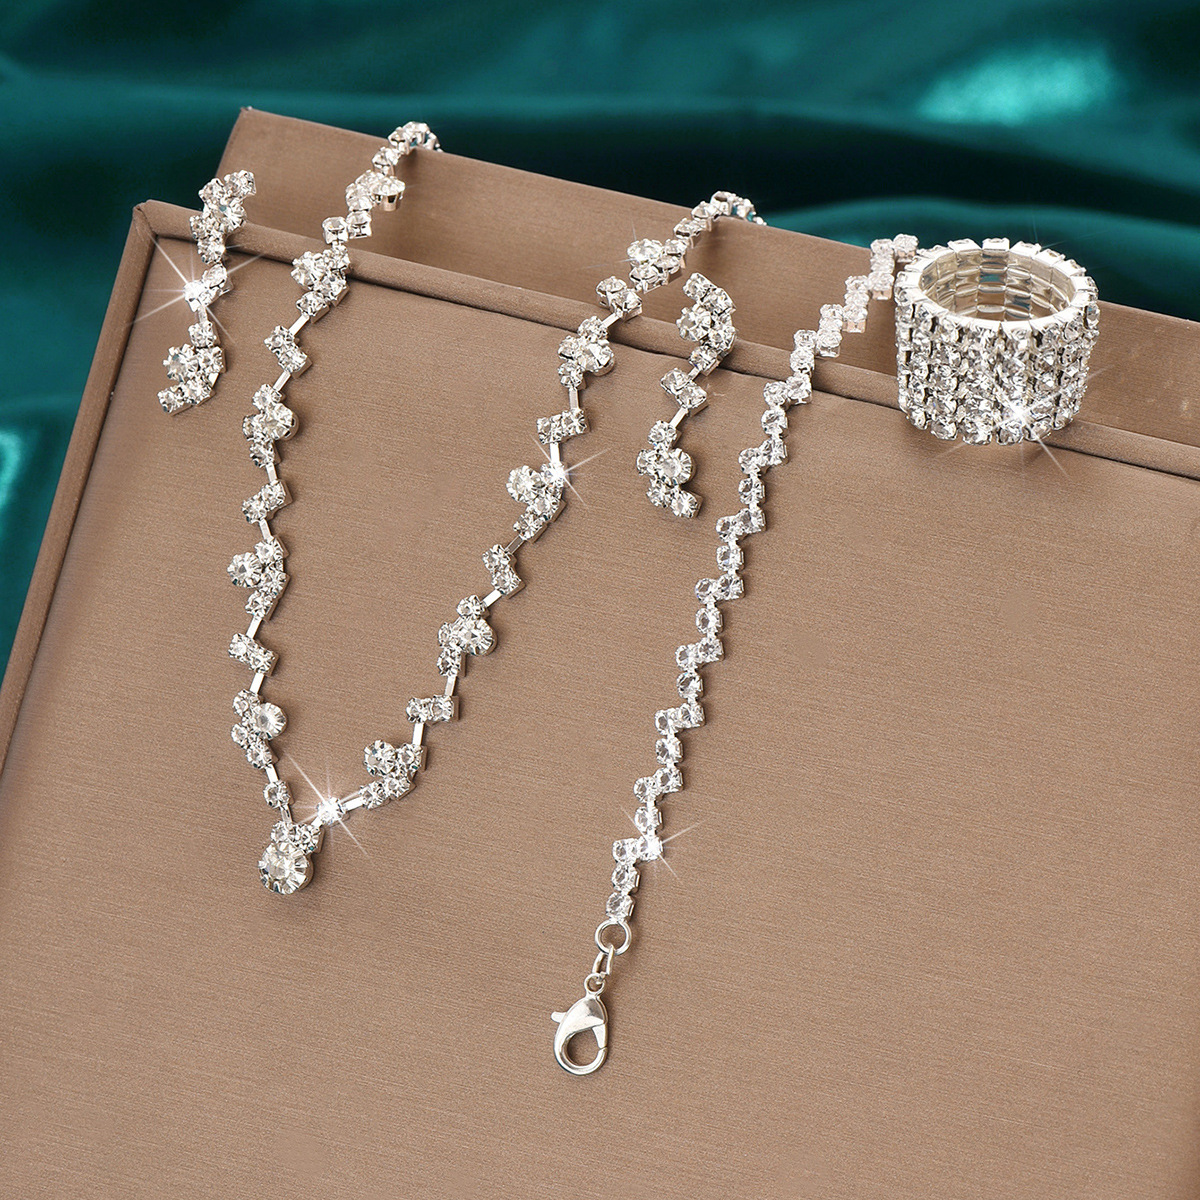 7:424785424-5 Silver necklace earrings bracelet ring set